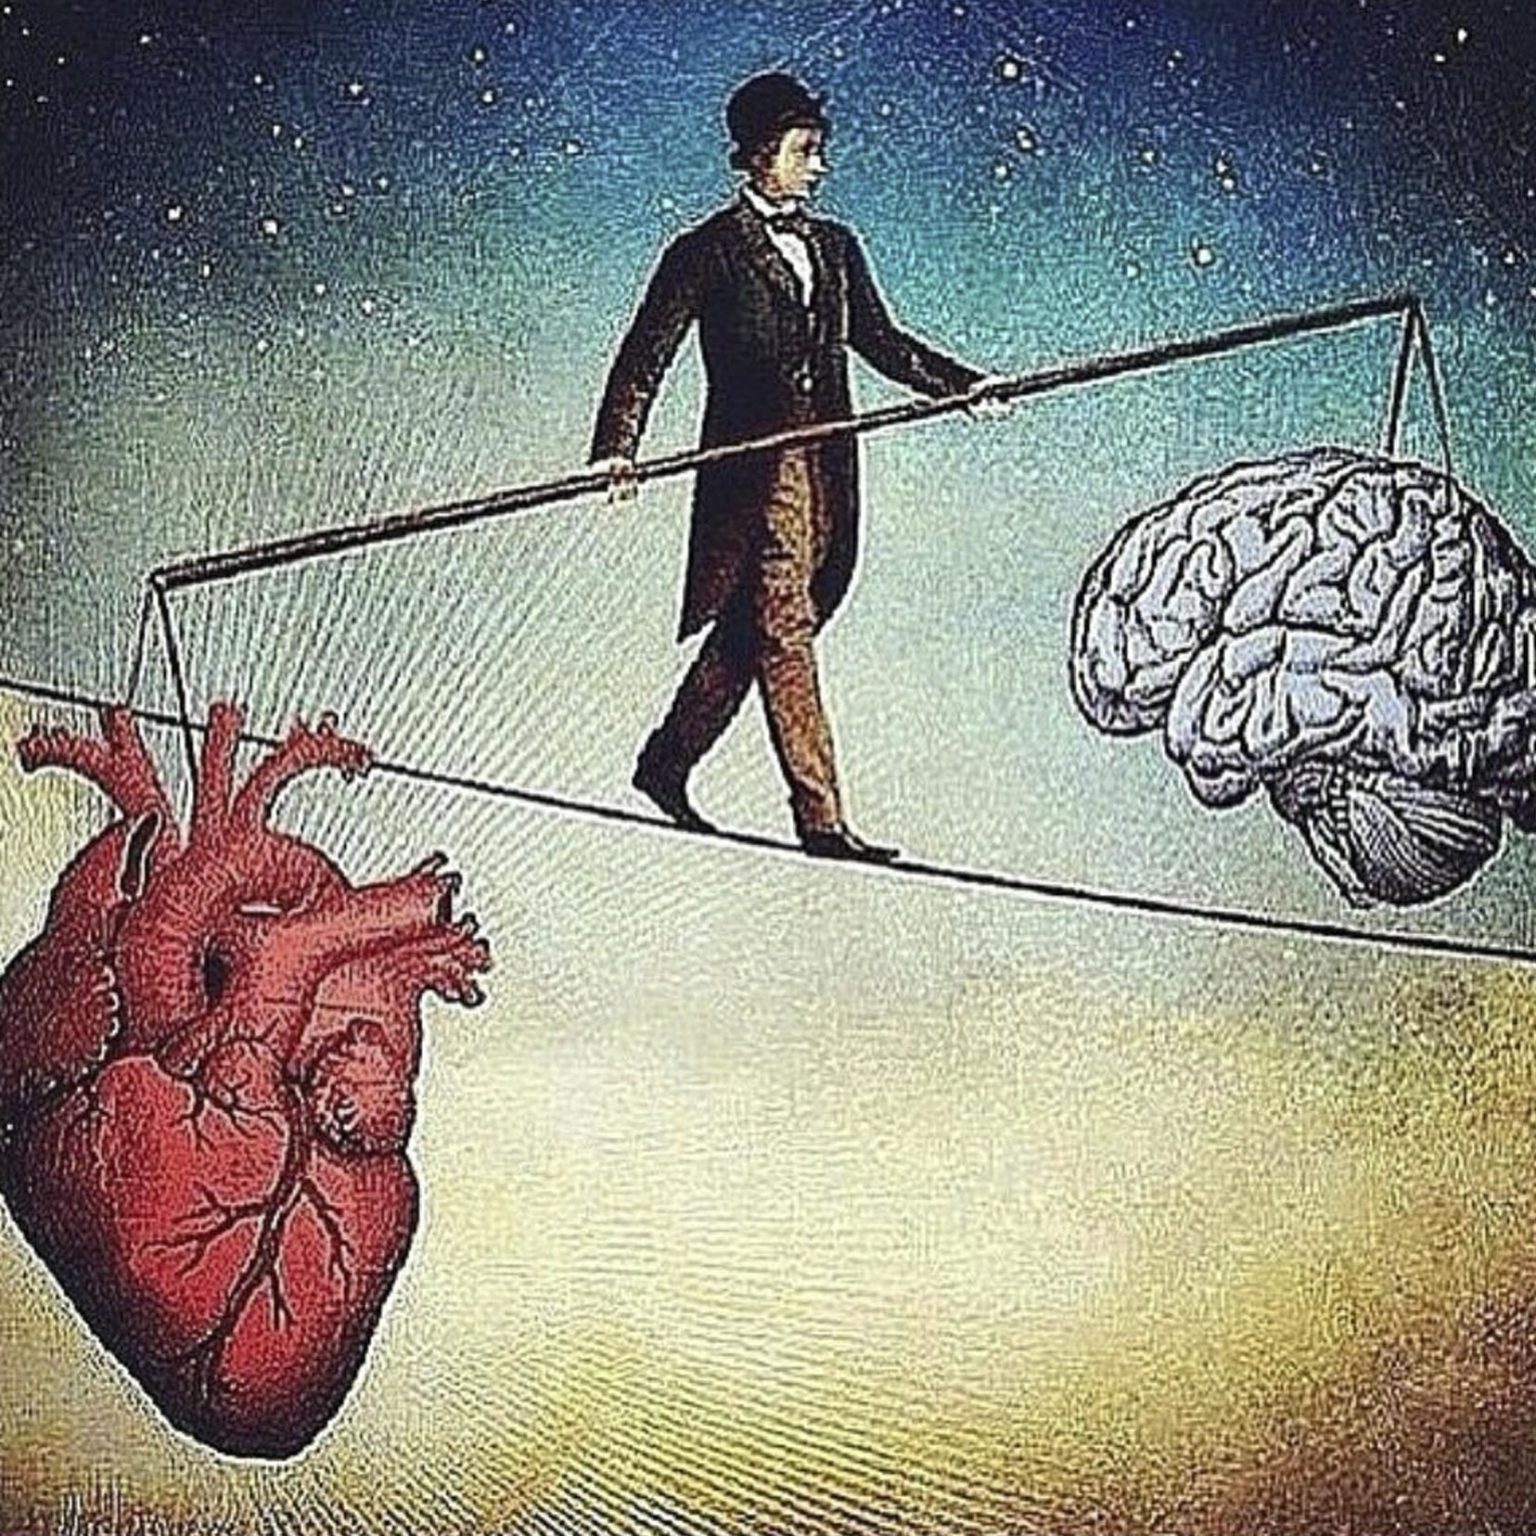 Фундаментальное переосмысление. Мозг и сердце. Ум и сердце. Борьба разума и чувств. Балансировать между разумом и сердцем.